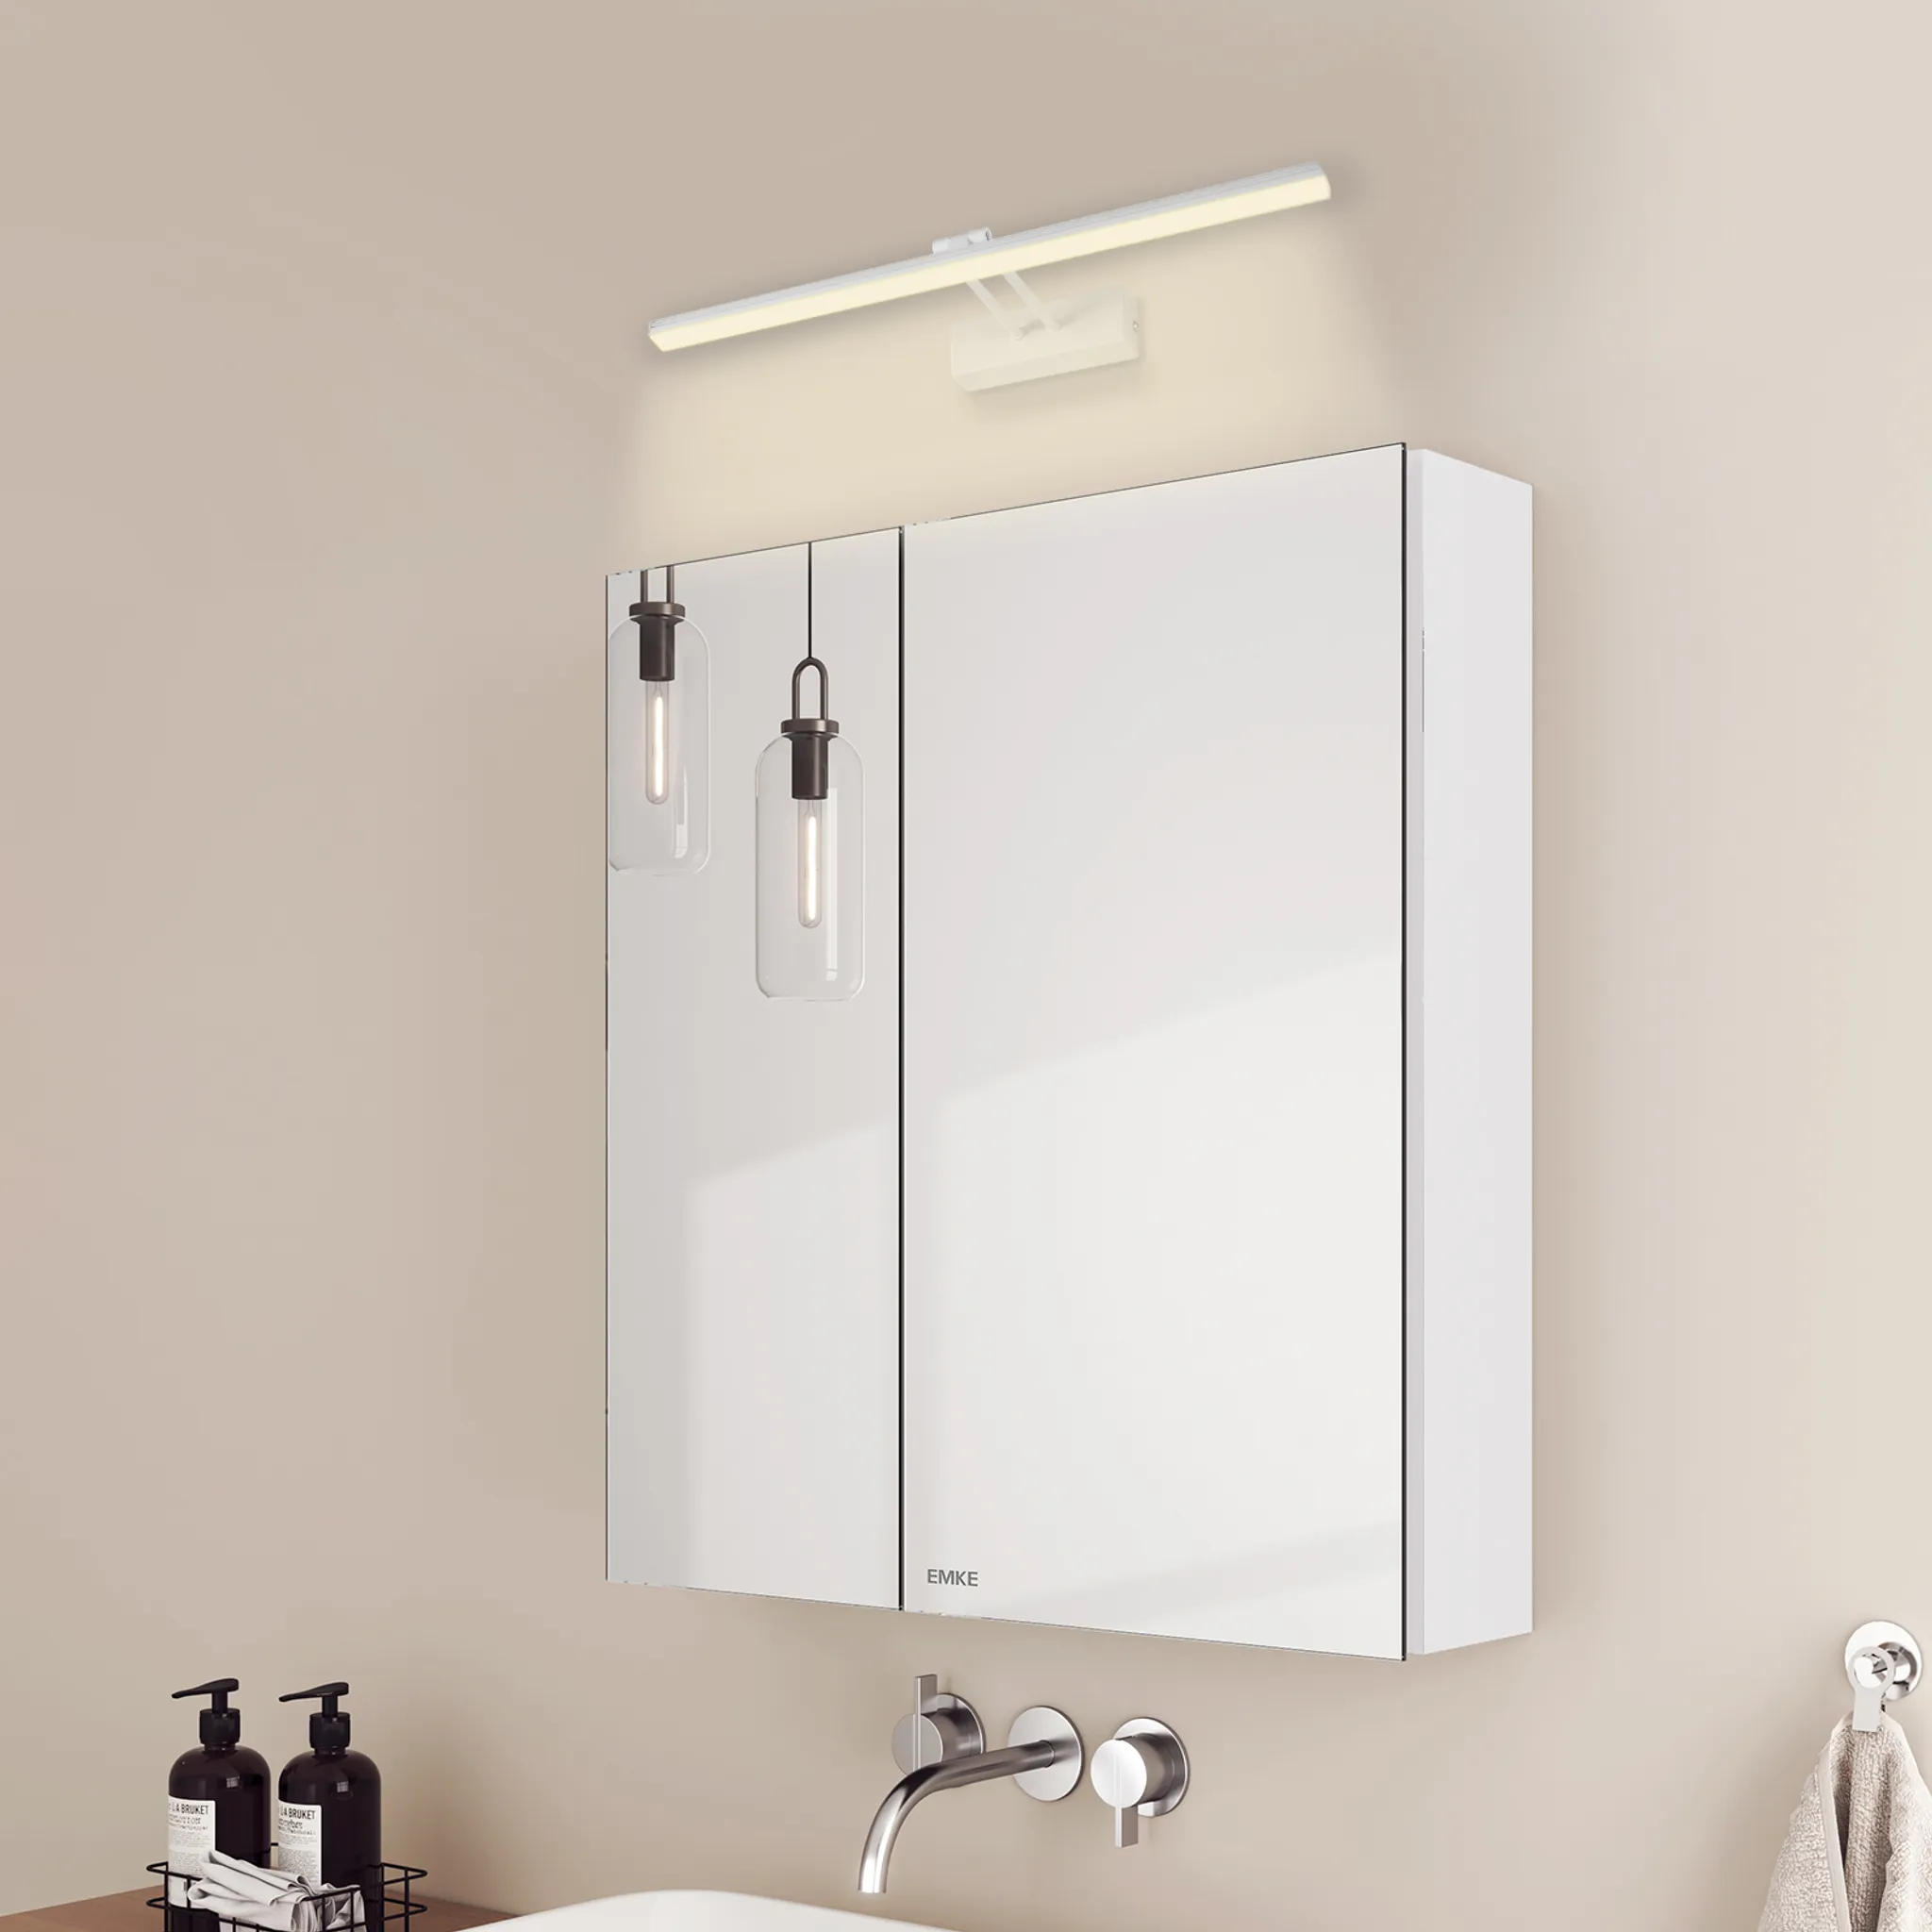 Badspiegelschrank EMKE Weiß Neutral Licht 2 Wandleuchten 4200k und Spiegellampen,60x65x14.5cm und Spiegelschrank Glasböden Weiß